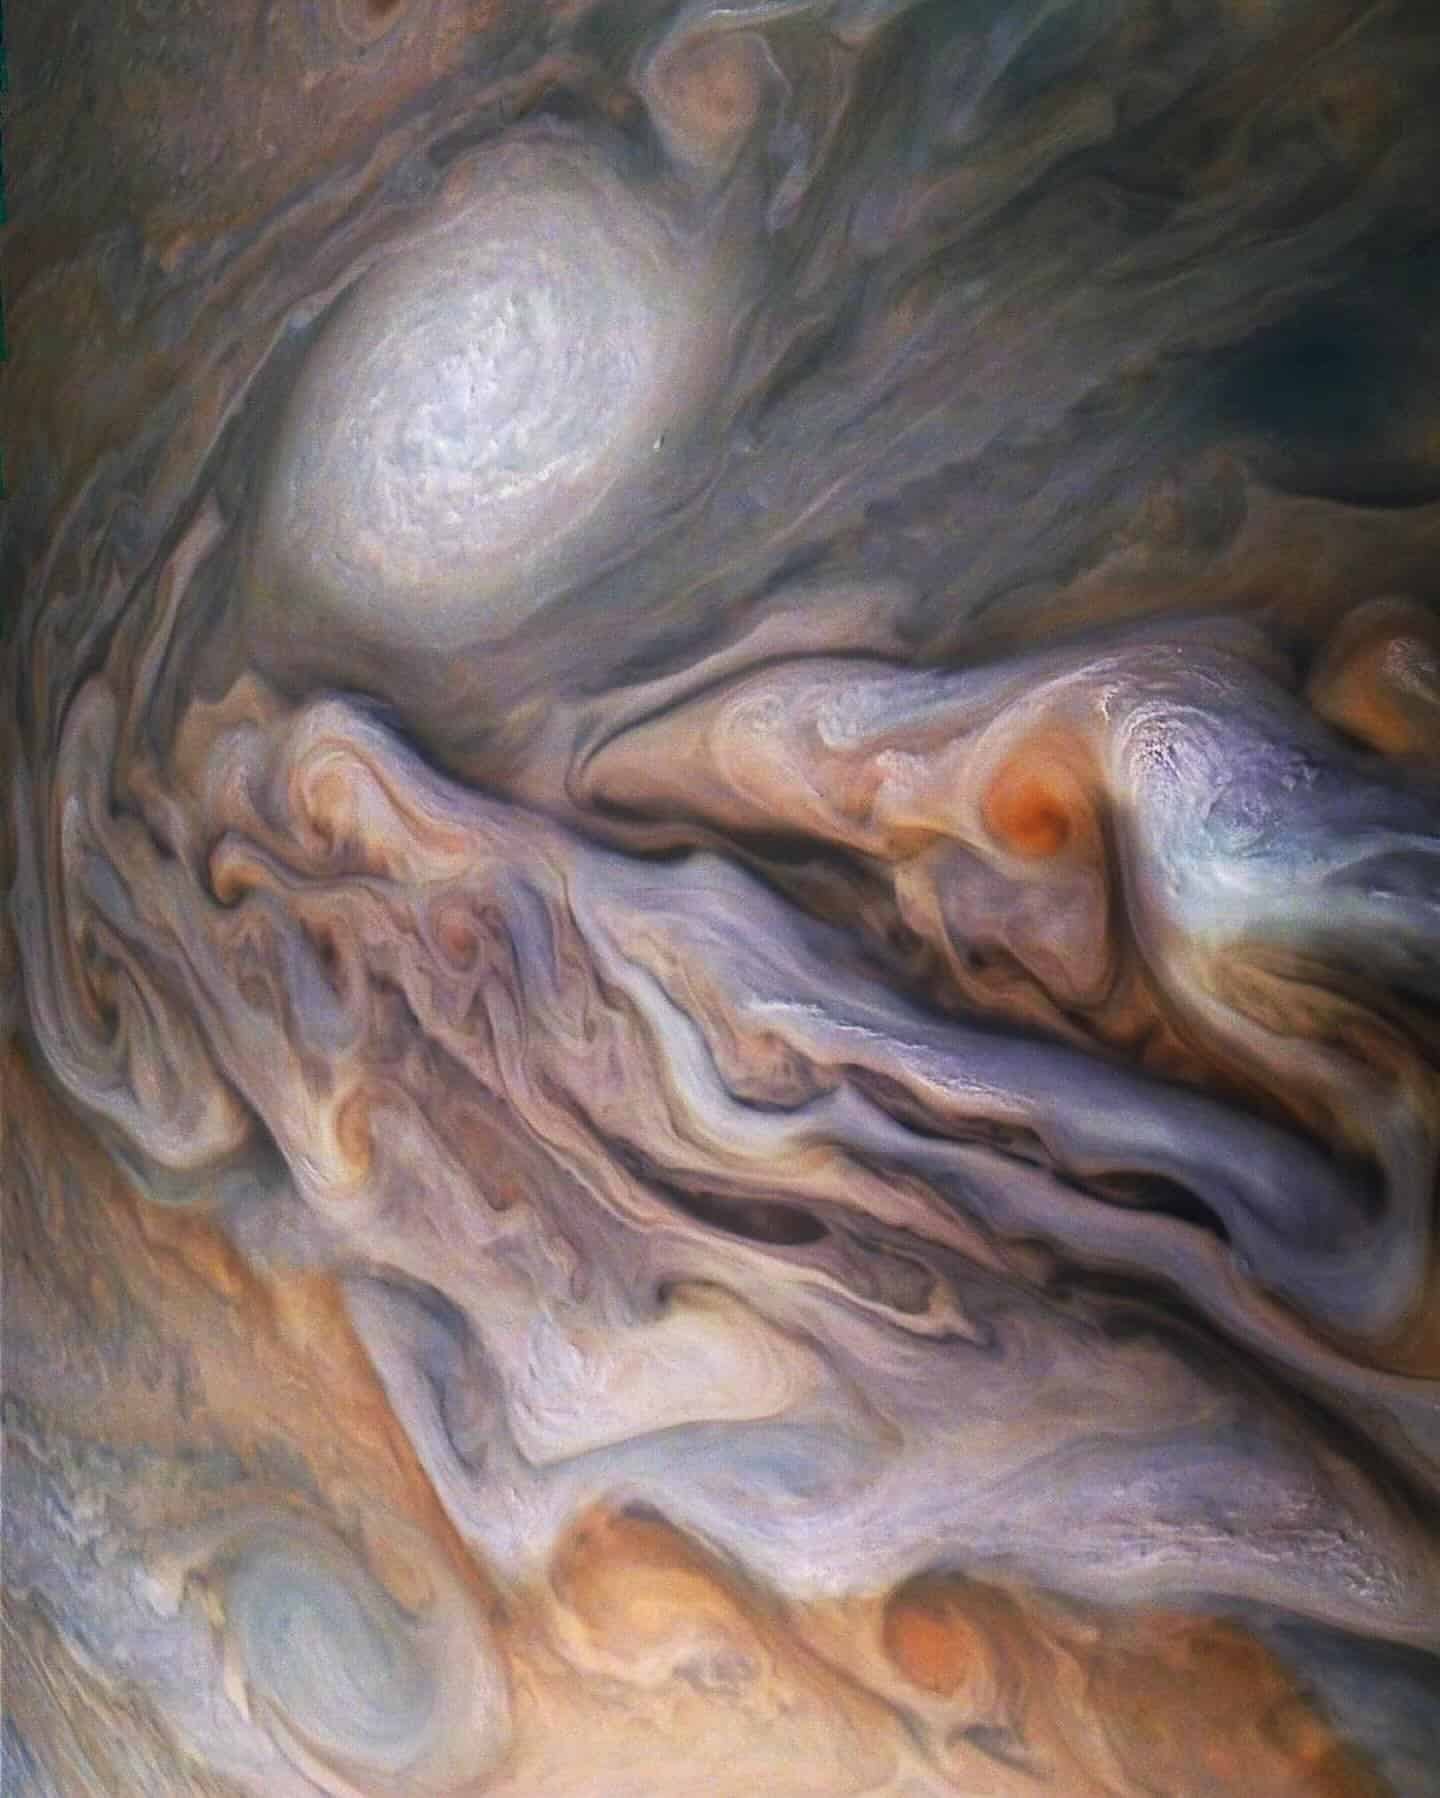 Júpiter